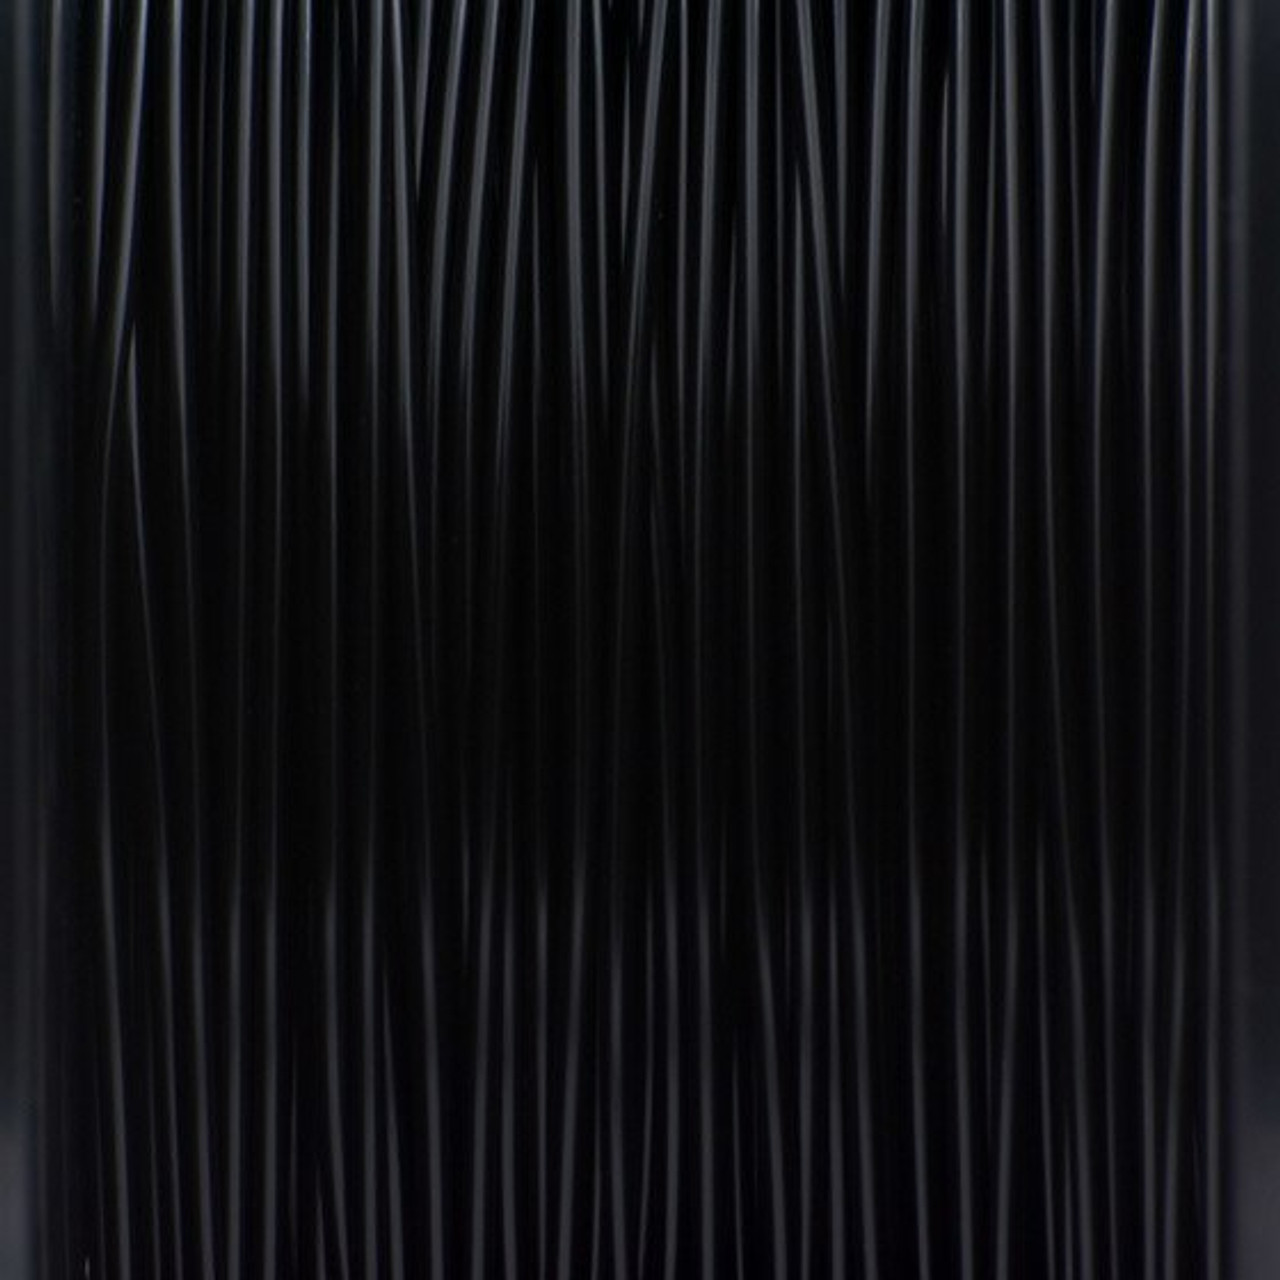 Filament ASA Noir (Black) Rosa3D 700 g